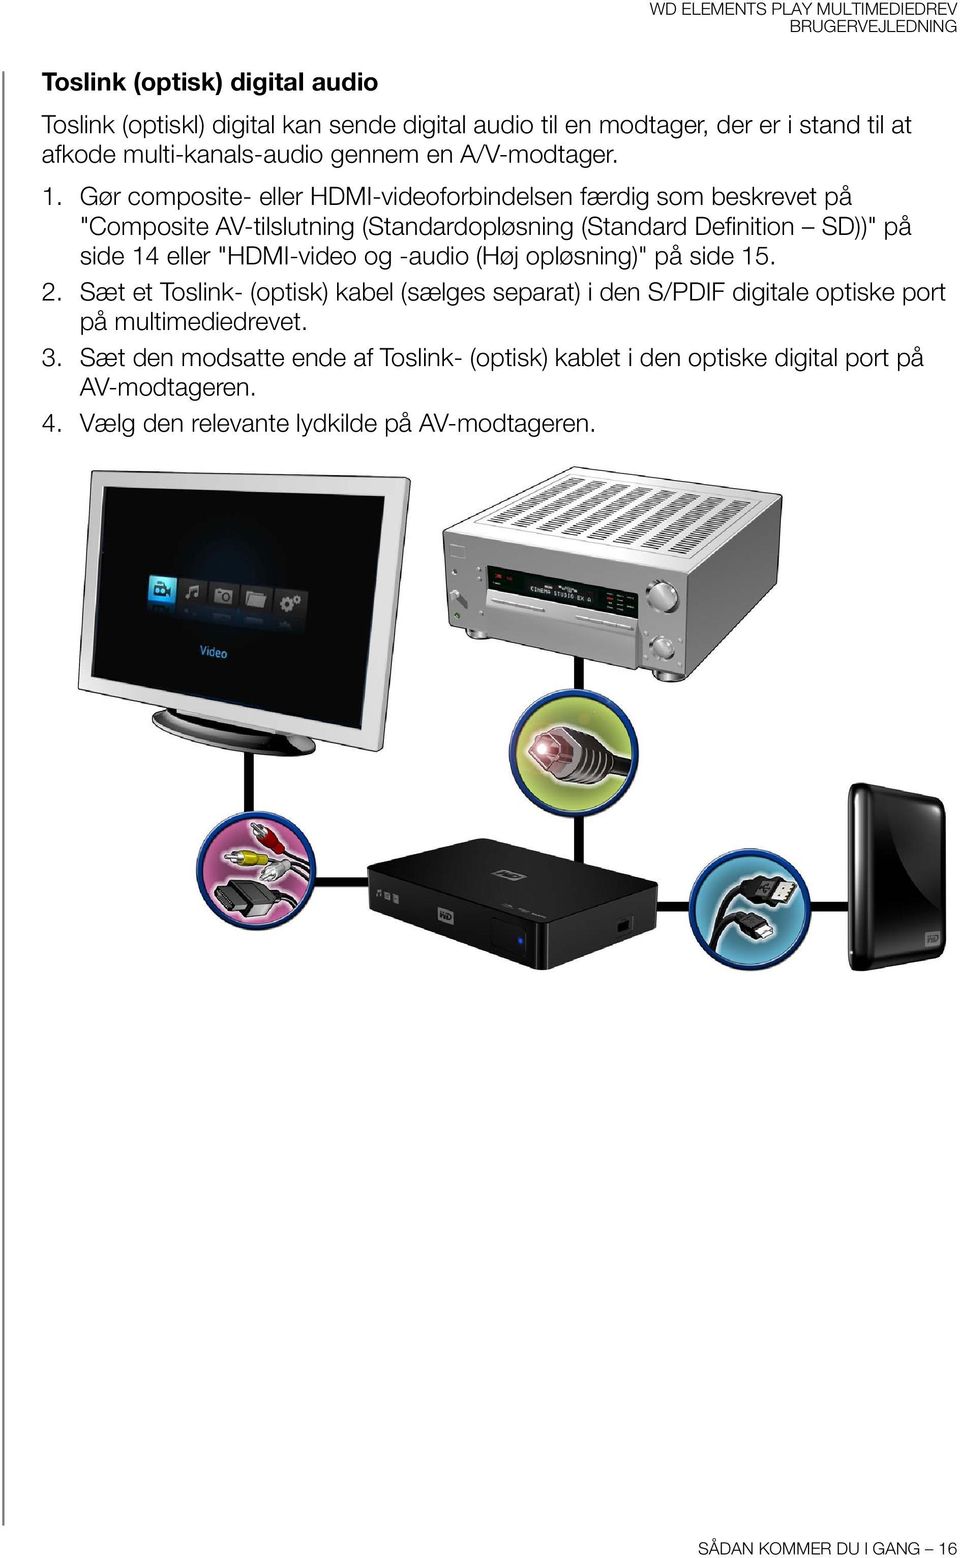 Gør composite- eller HDMI-videoforbindelsen færdig som beskrevet på "Composite AV-tilslutning (Standardopløsning (Standard Definition SD))" på side 14 eller